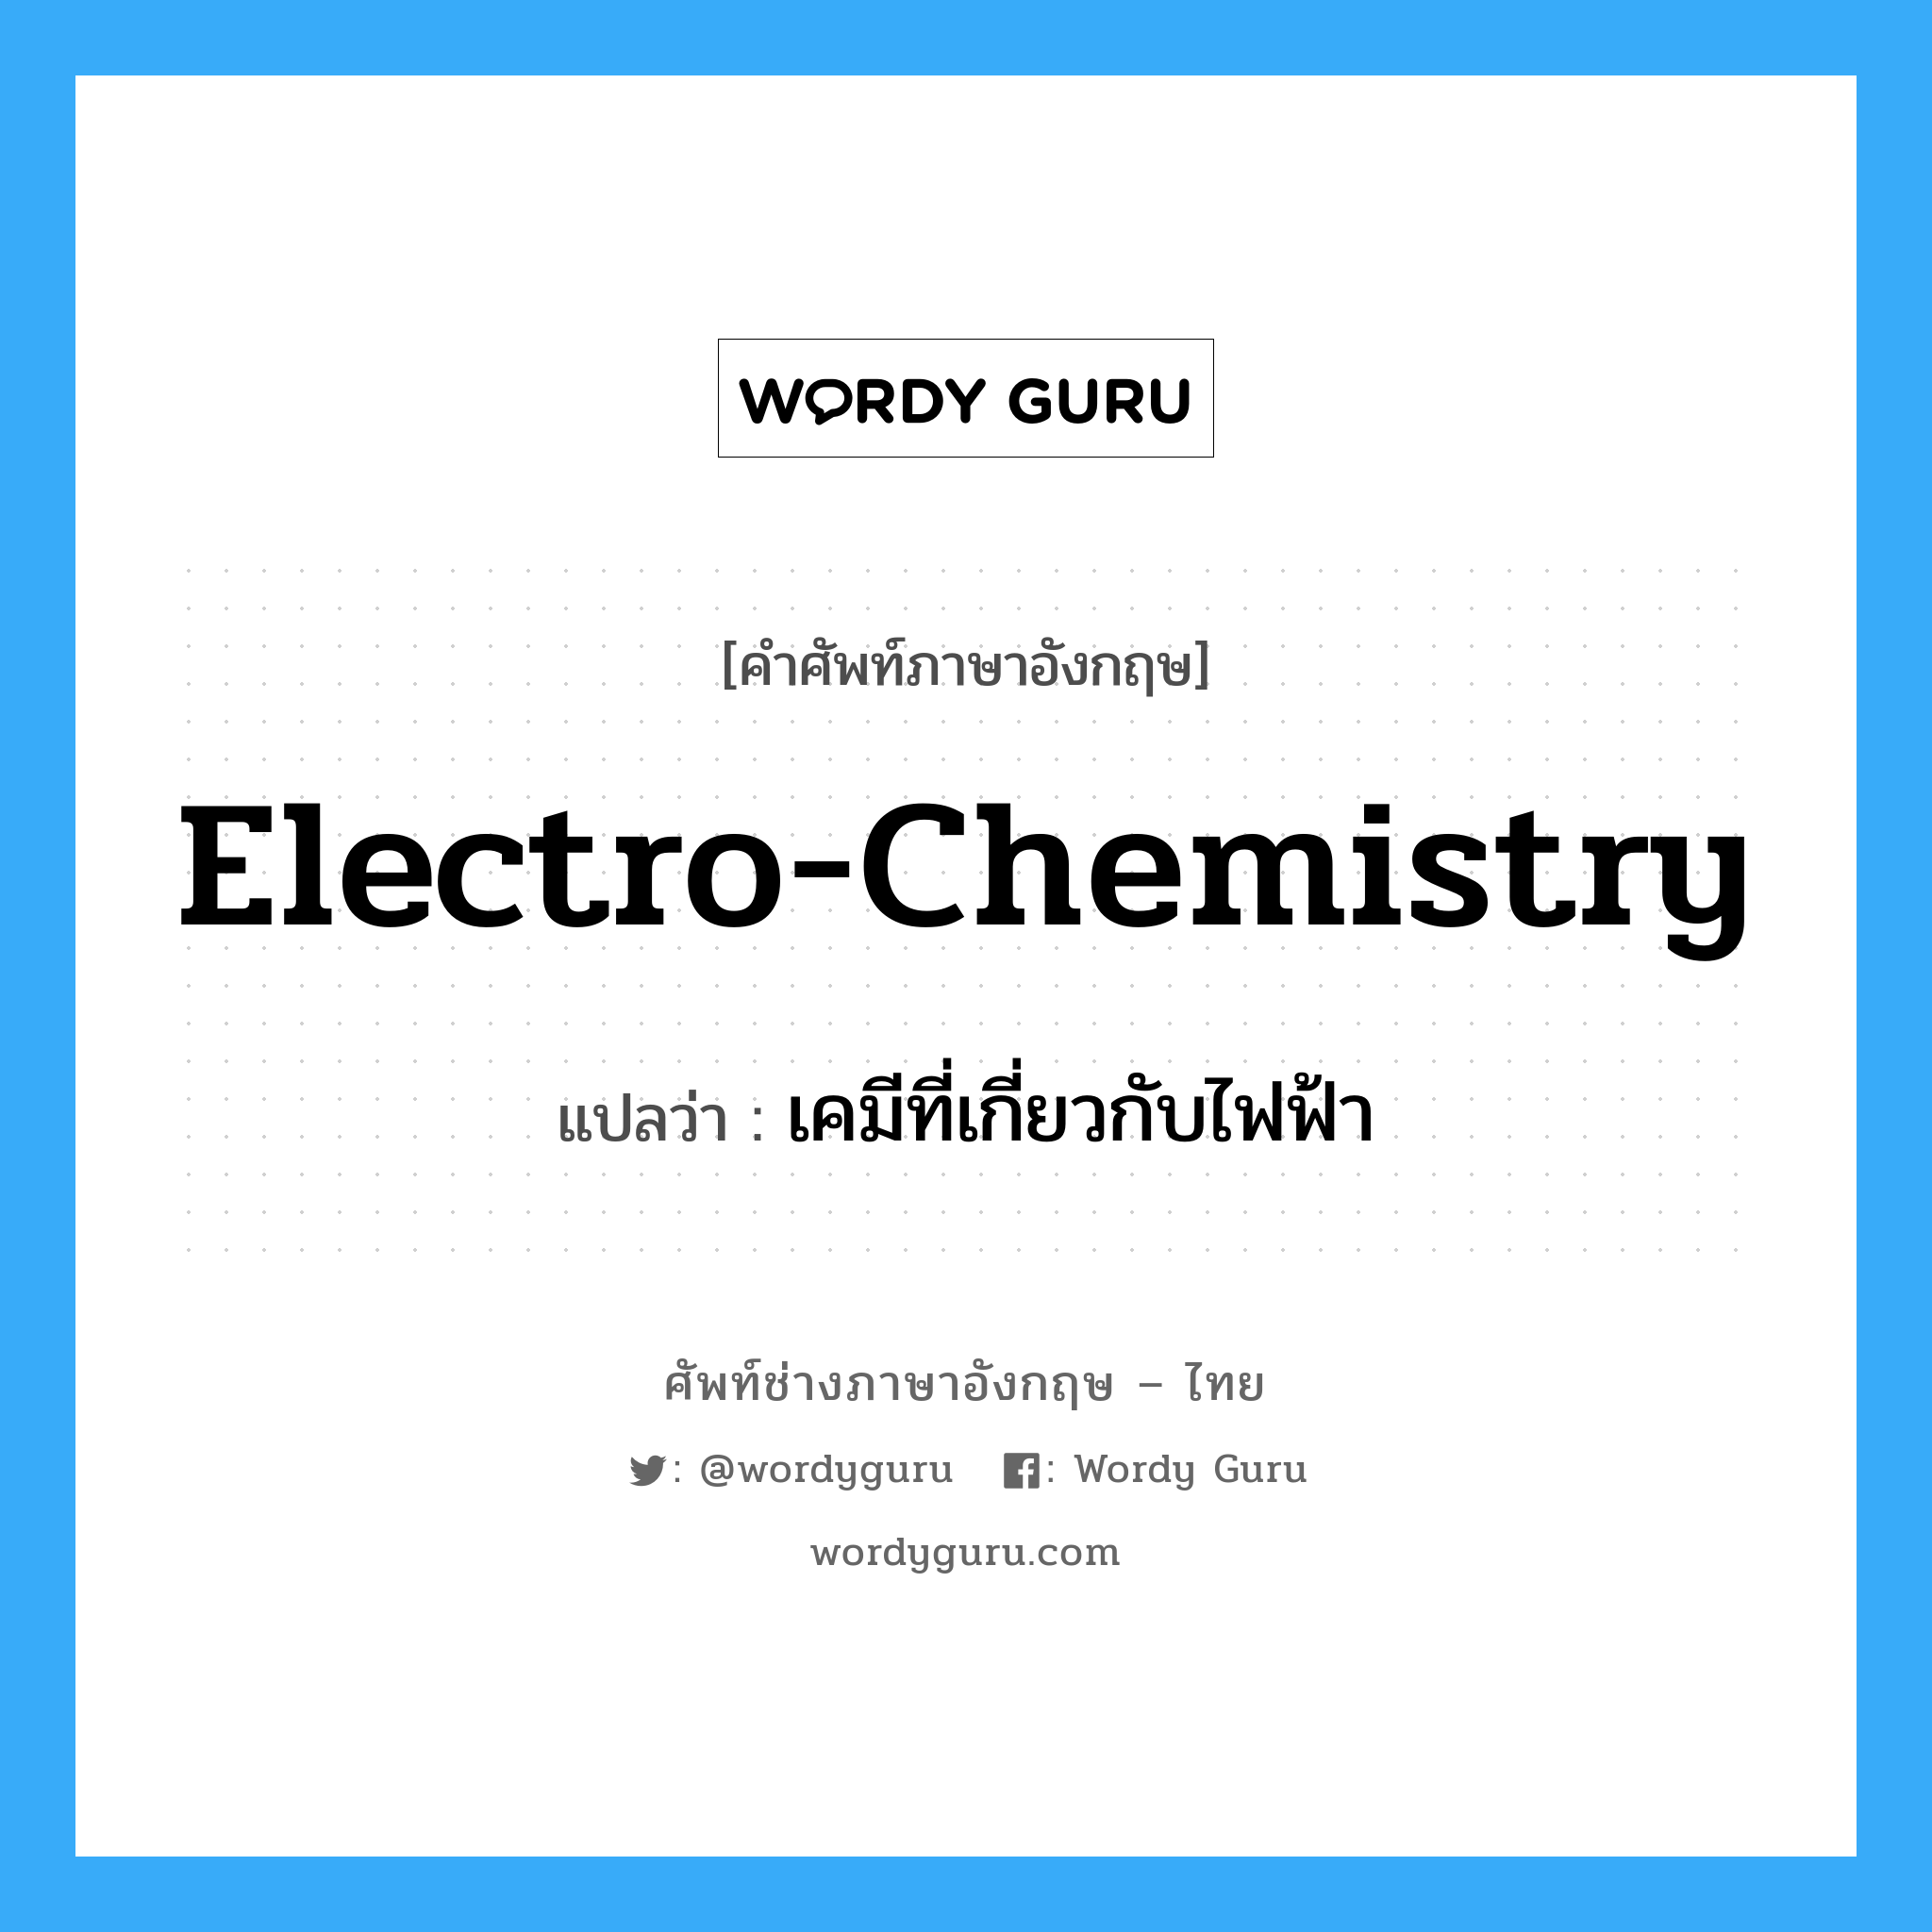 เคมีที่เกี่ยวกับไฟฟ้า ภาษาอังกฤษ?, คำศัพท์ช่างภาษาอังกฤษ - ไทย เคมีที่เกี่ยวกับไฟฟ้า คำศัพท์ภาษาอังกฤษ เคมีที่เกี่ยวกับไฟฟ้า แปลว่า electro-chemistry